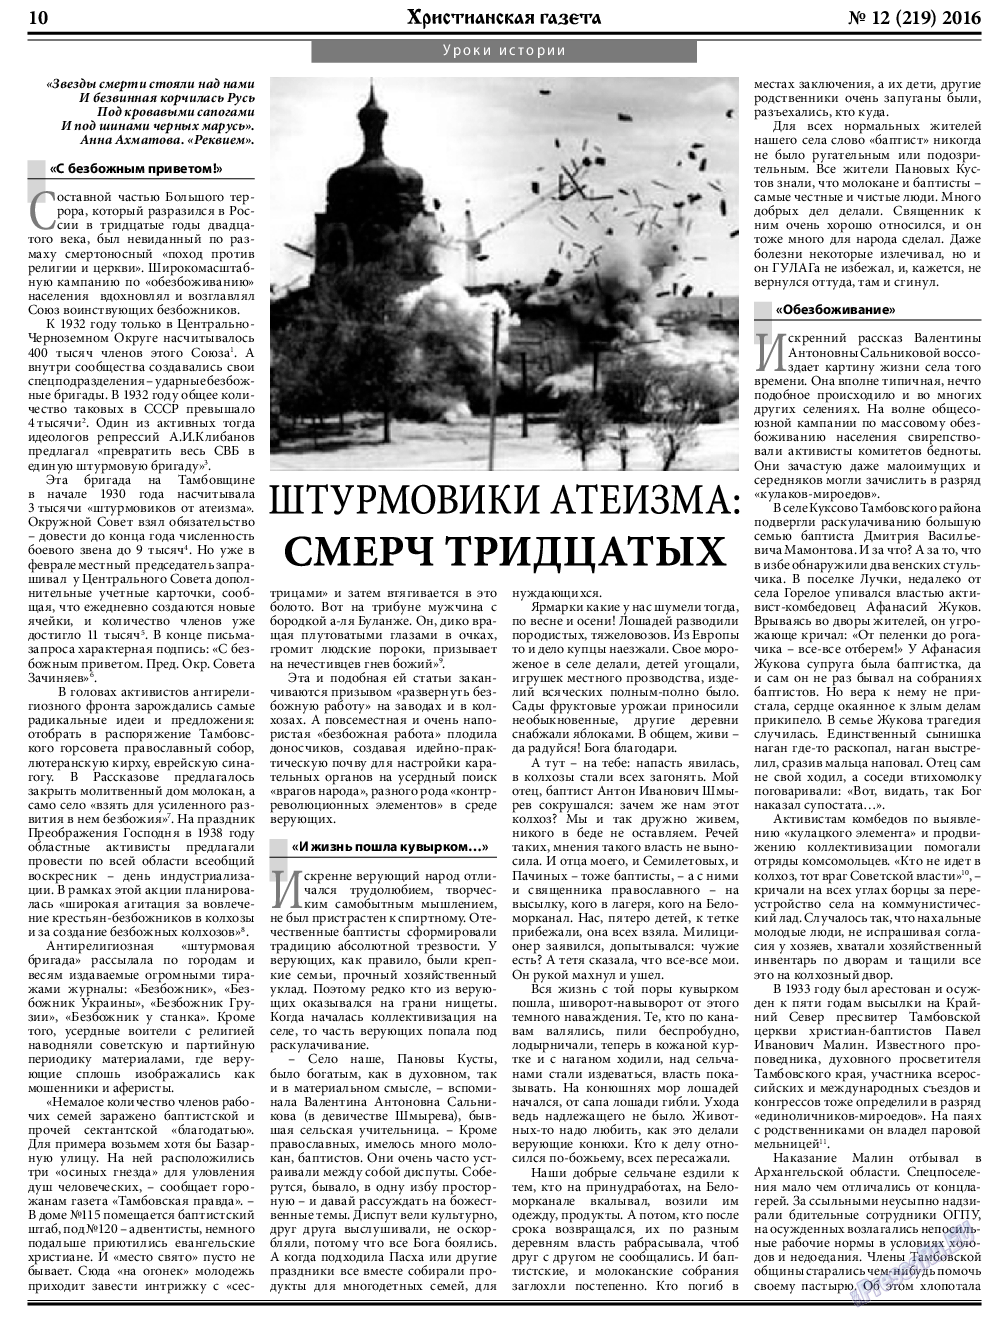 Христианская газета, газета. 2016 №12 стр.10